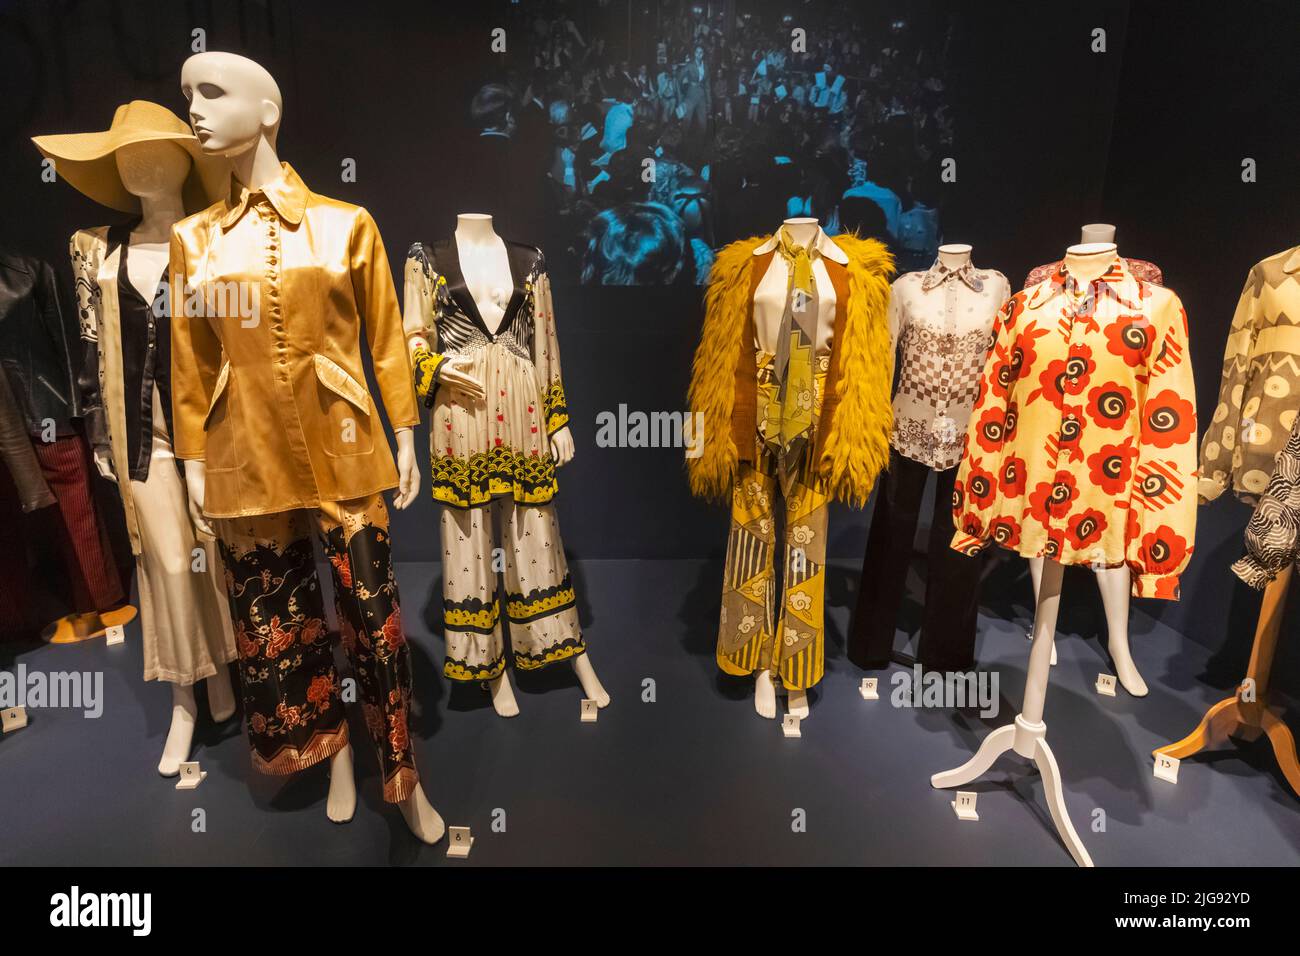 Angleterre, Londres, Southwark, Bermondsey, Musée de la mode et du textile, exposition des vêtements pour femmes des années 1960 et 1970 Banque D'Images